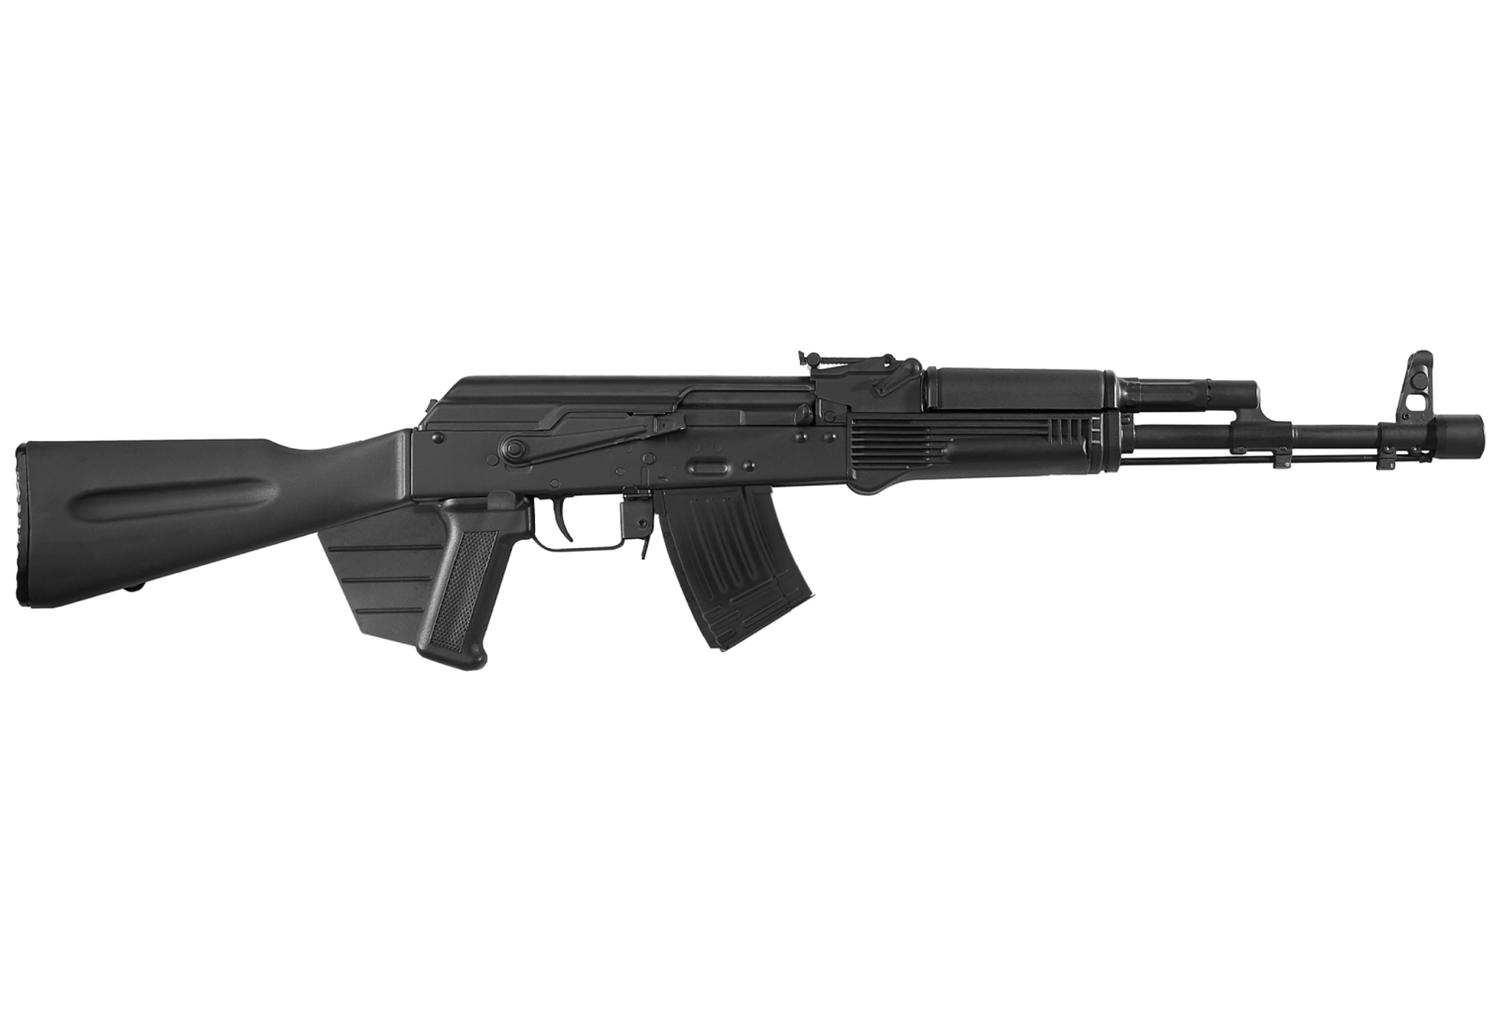  Kali- 103 7.62x39mm Rifle - Featureless